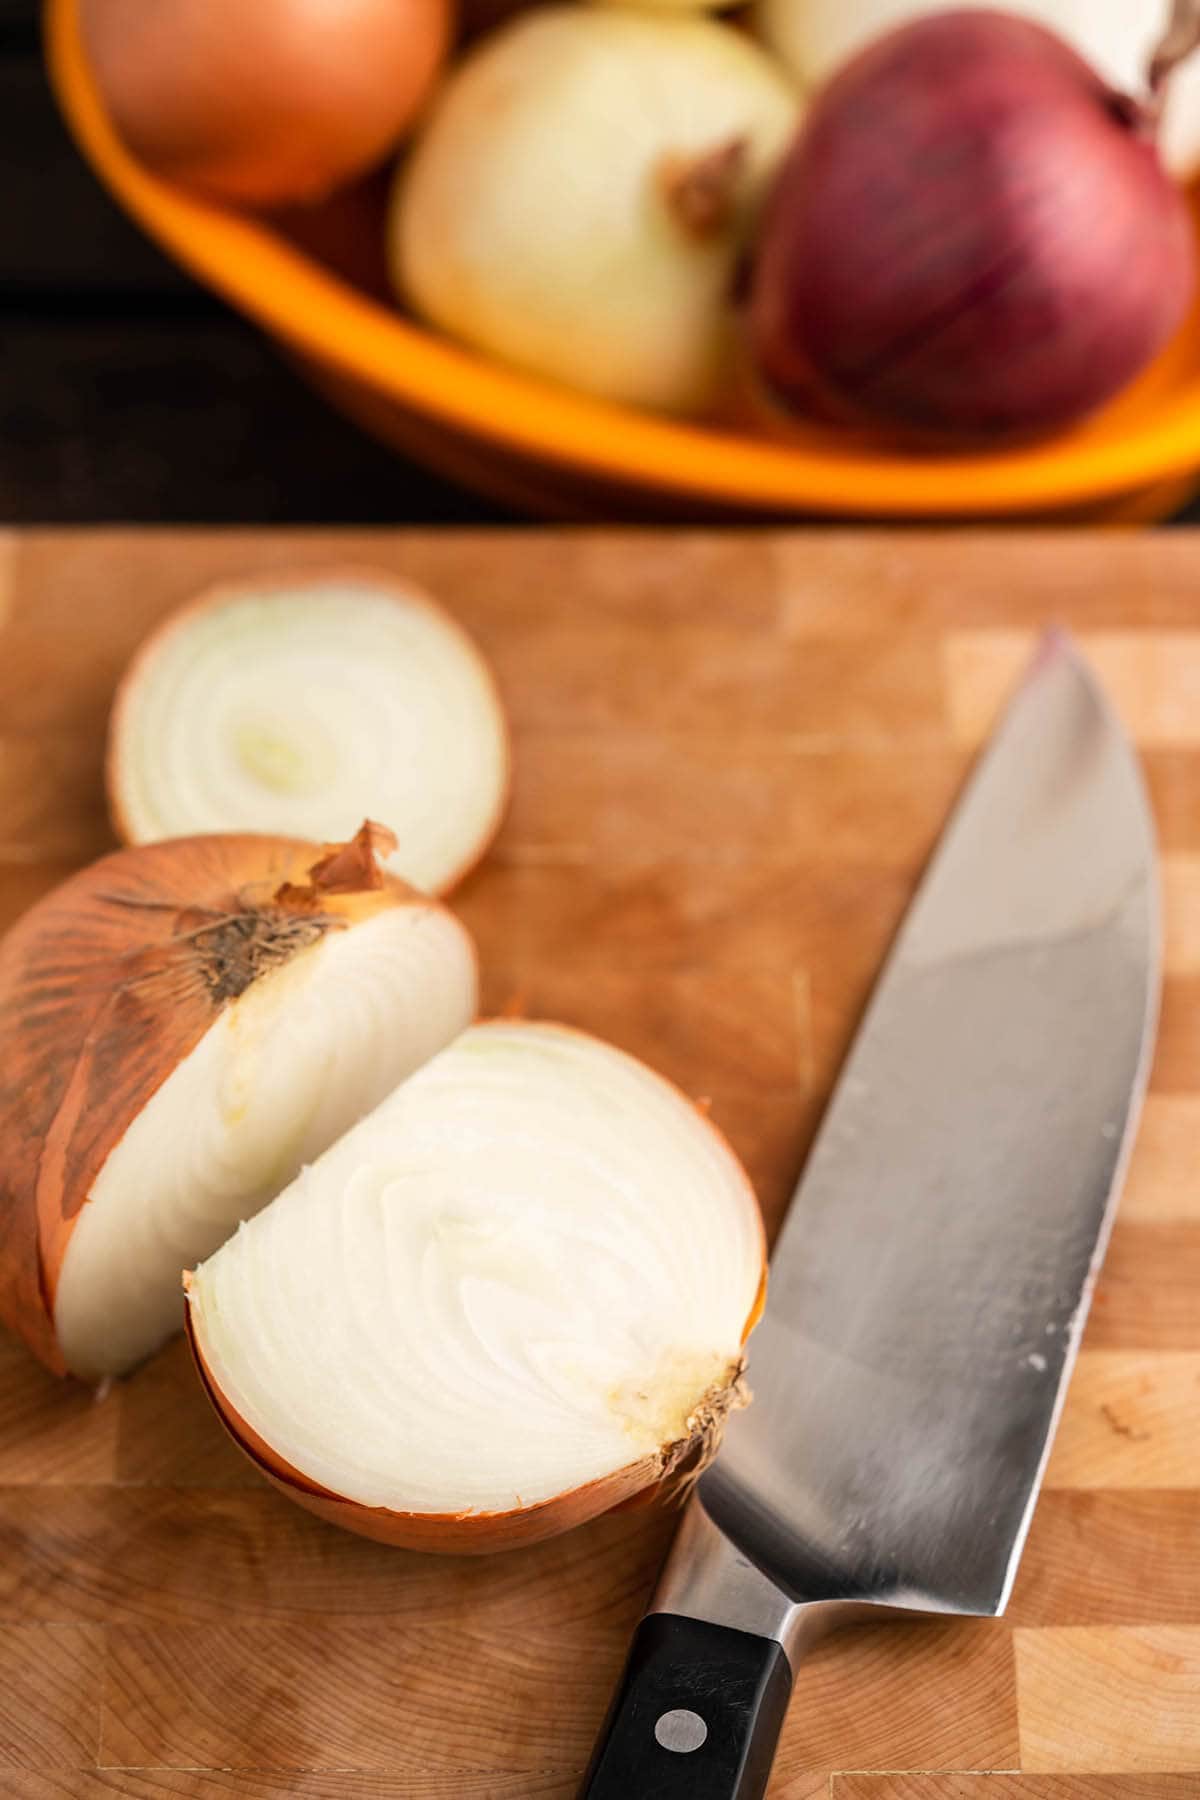 Onion on cutting board sliced in half.